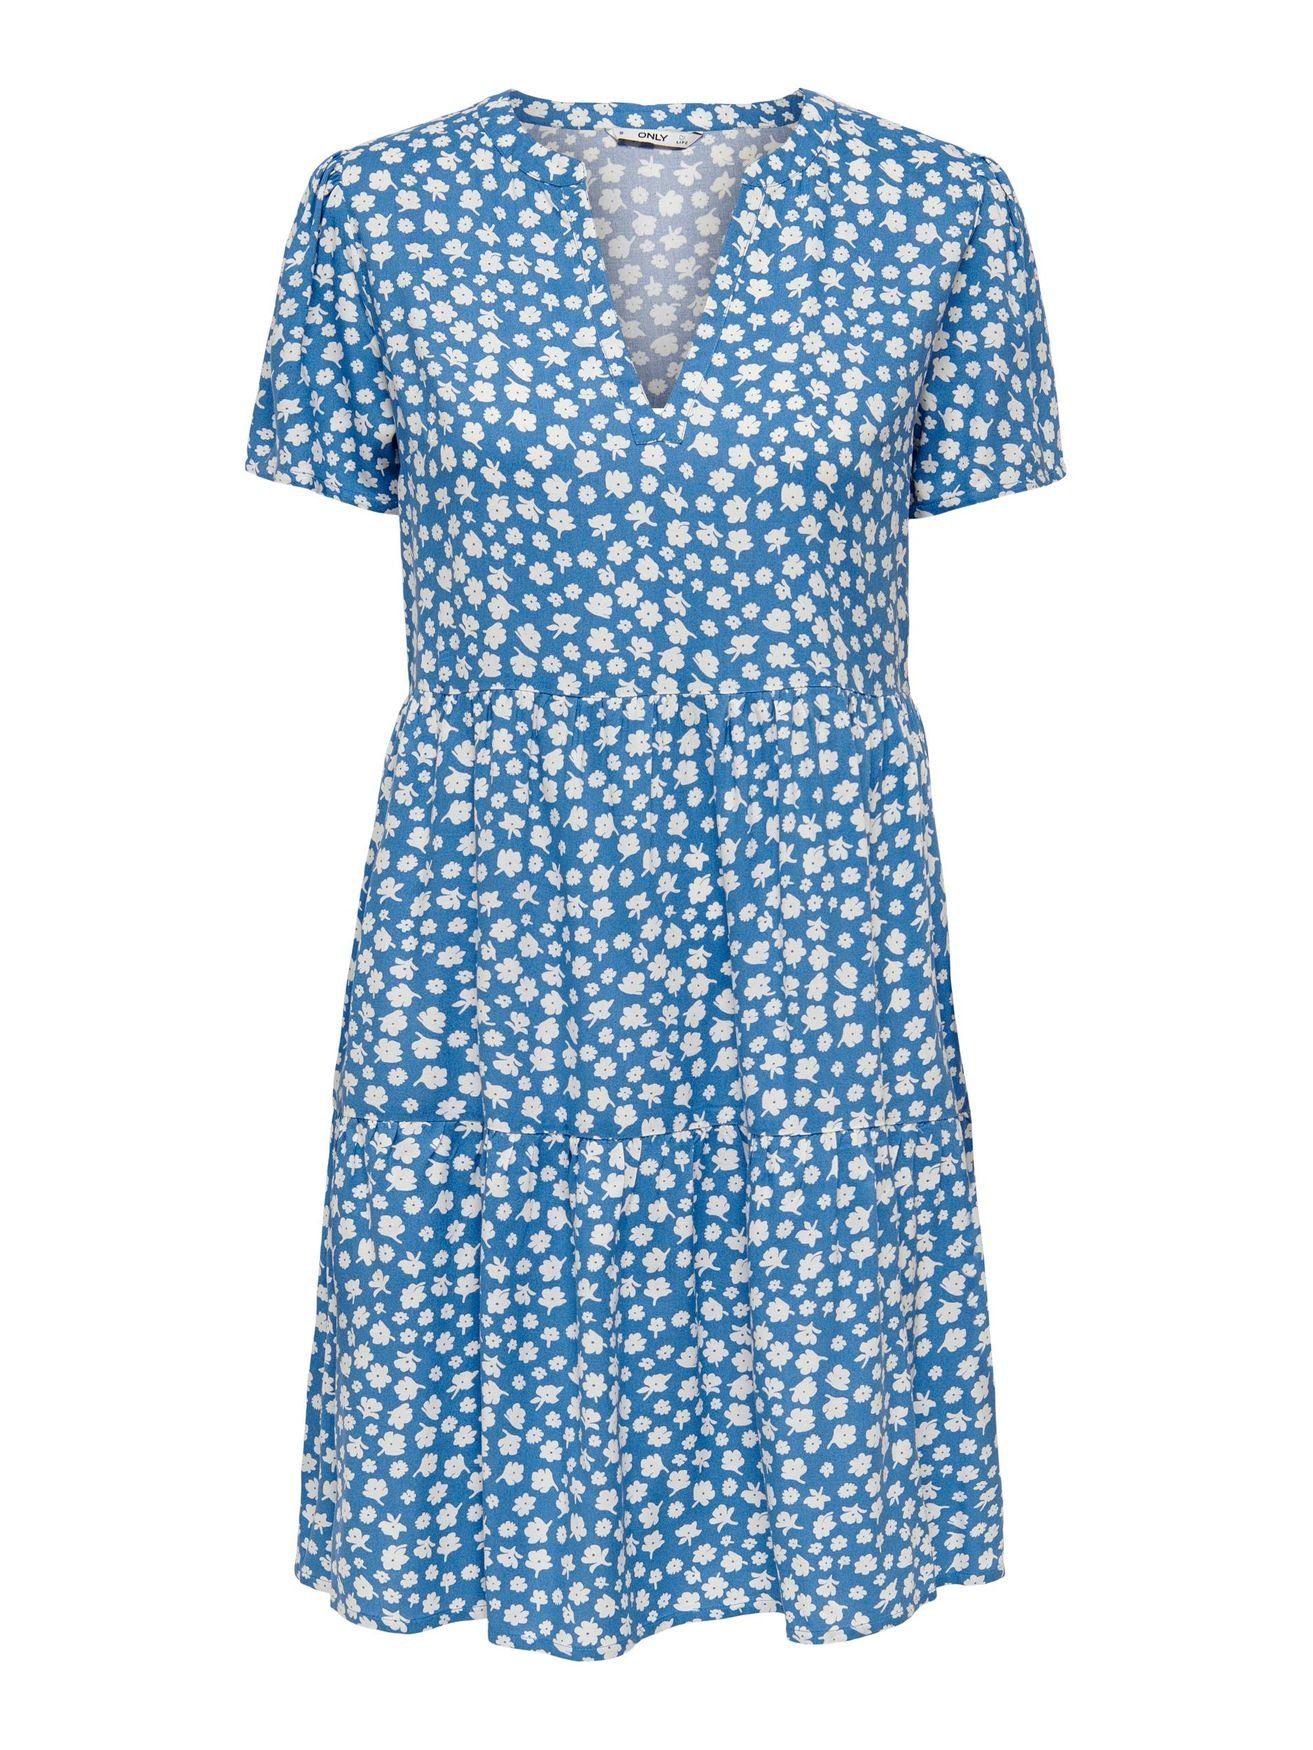 Kurzes ONLZALLY Blusen Shirtkleid (knielang) Kleid in 4928 ONLY Blau V-Ausschnitt